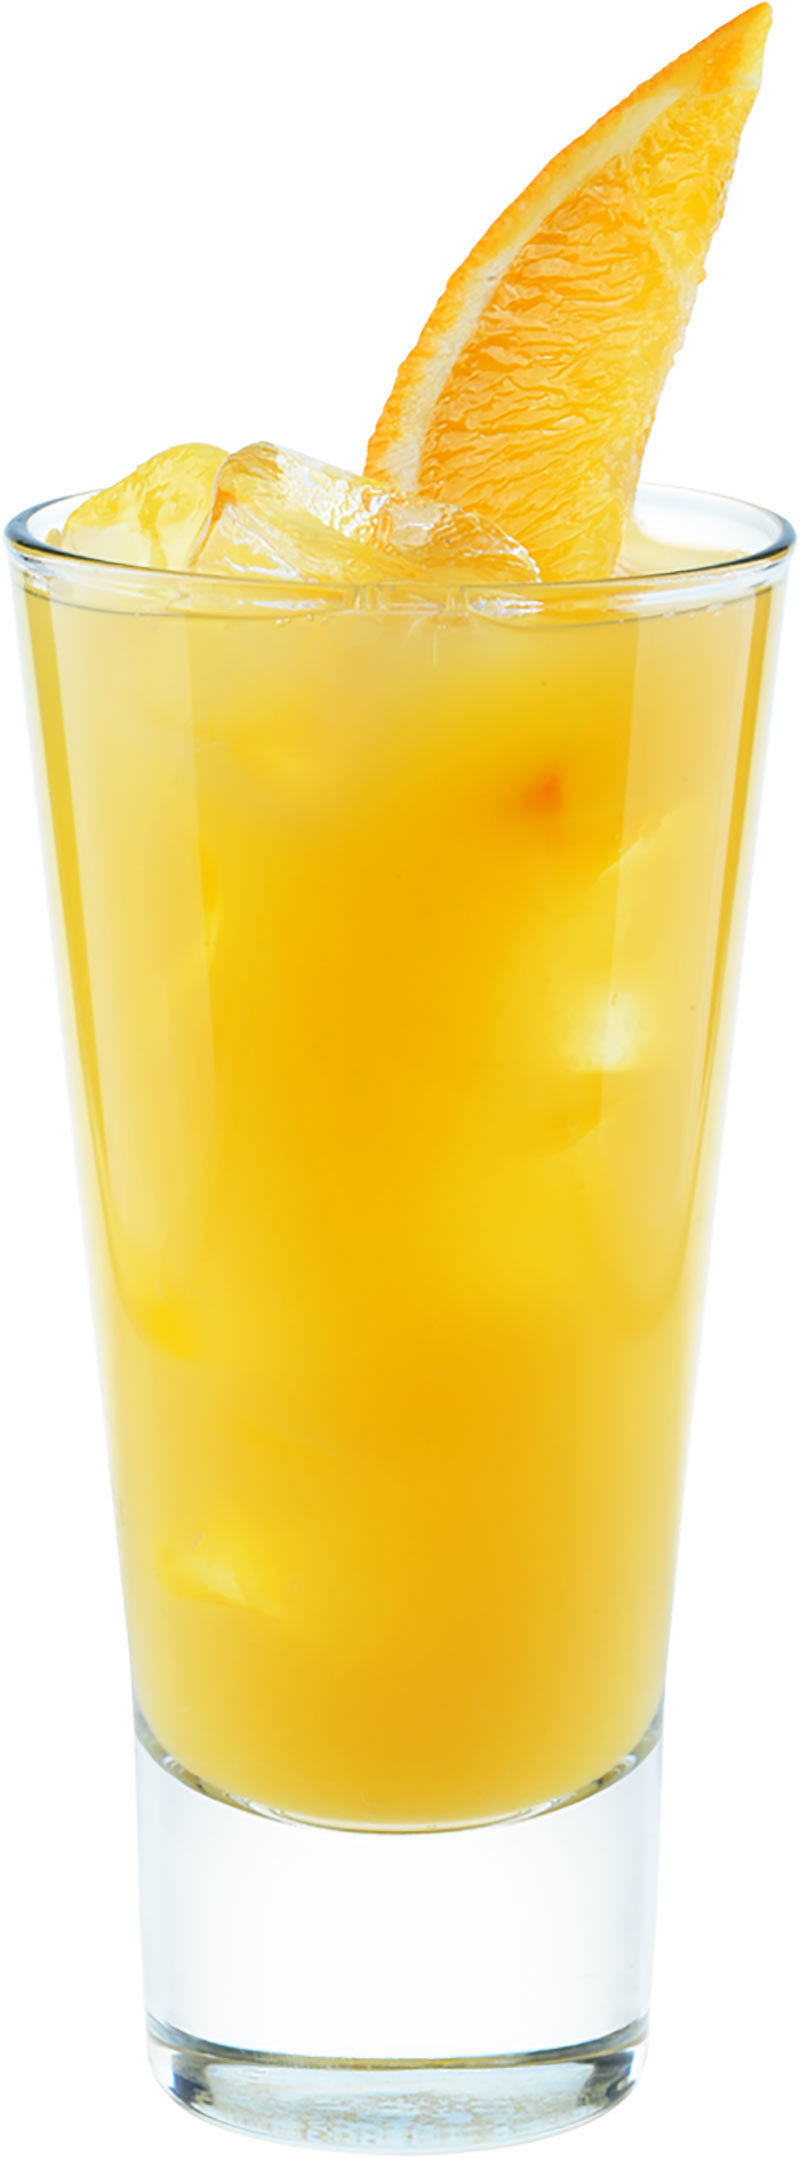 White Rum & Orange Juice